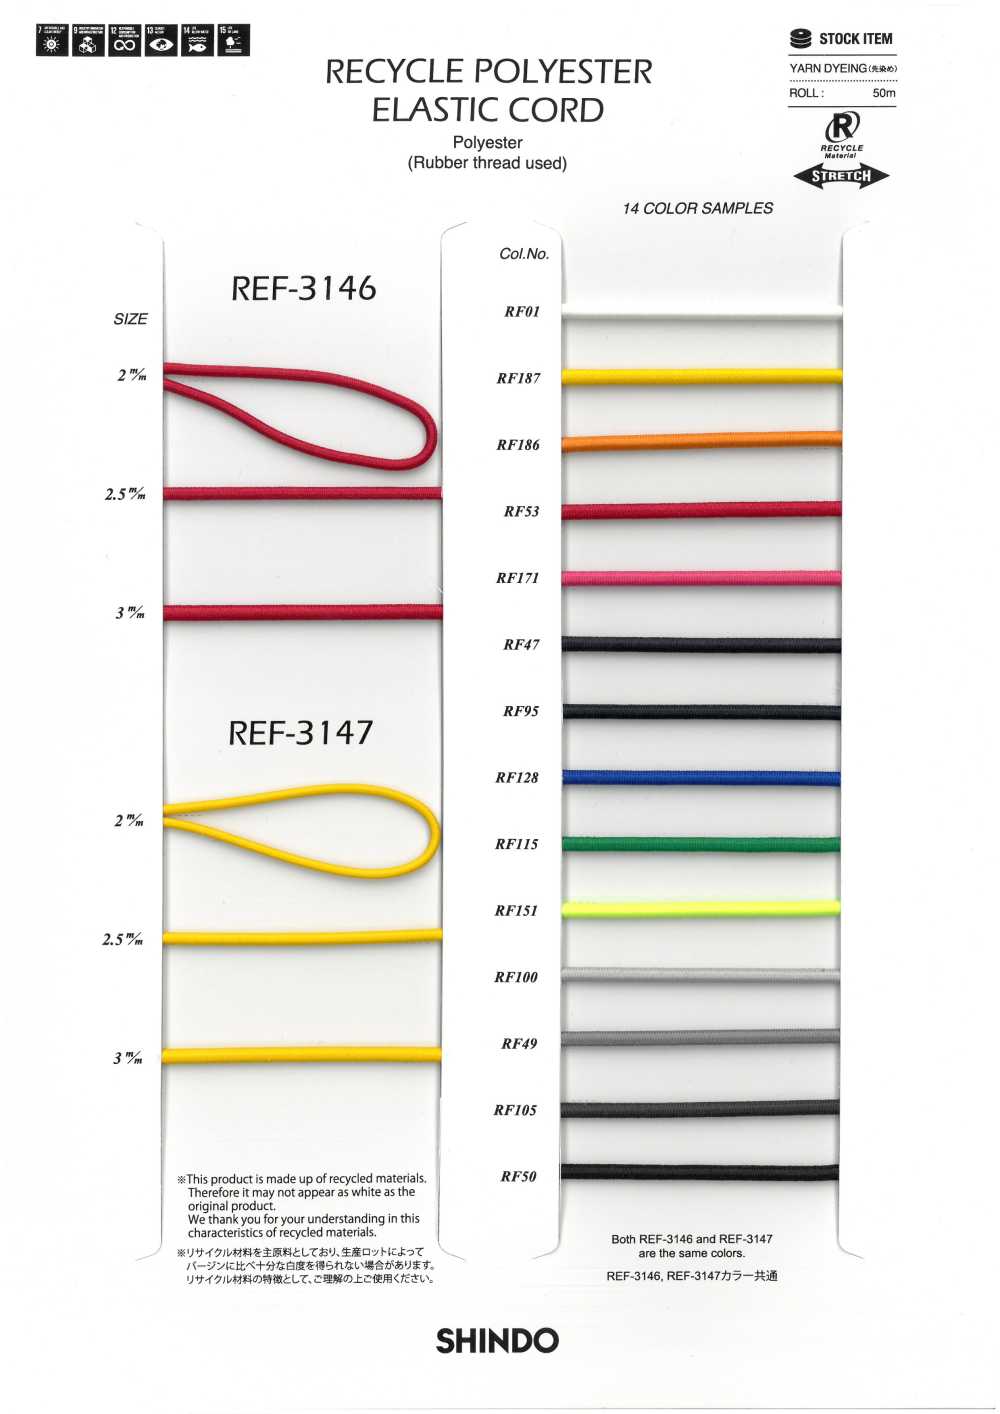 REF-3146 Corda Elastica In Poliestere Riciclato (Tipo Morbido)[Cavo A Nastro] SHINDO(SIC)